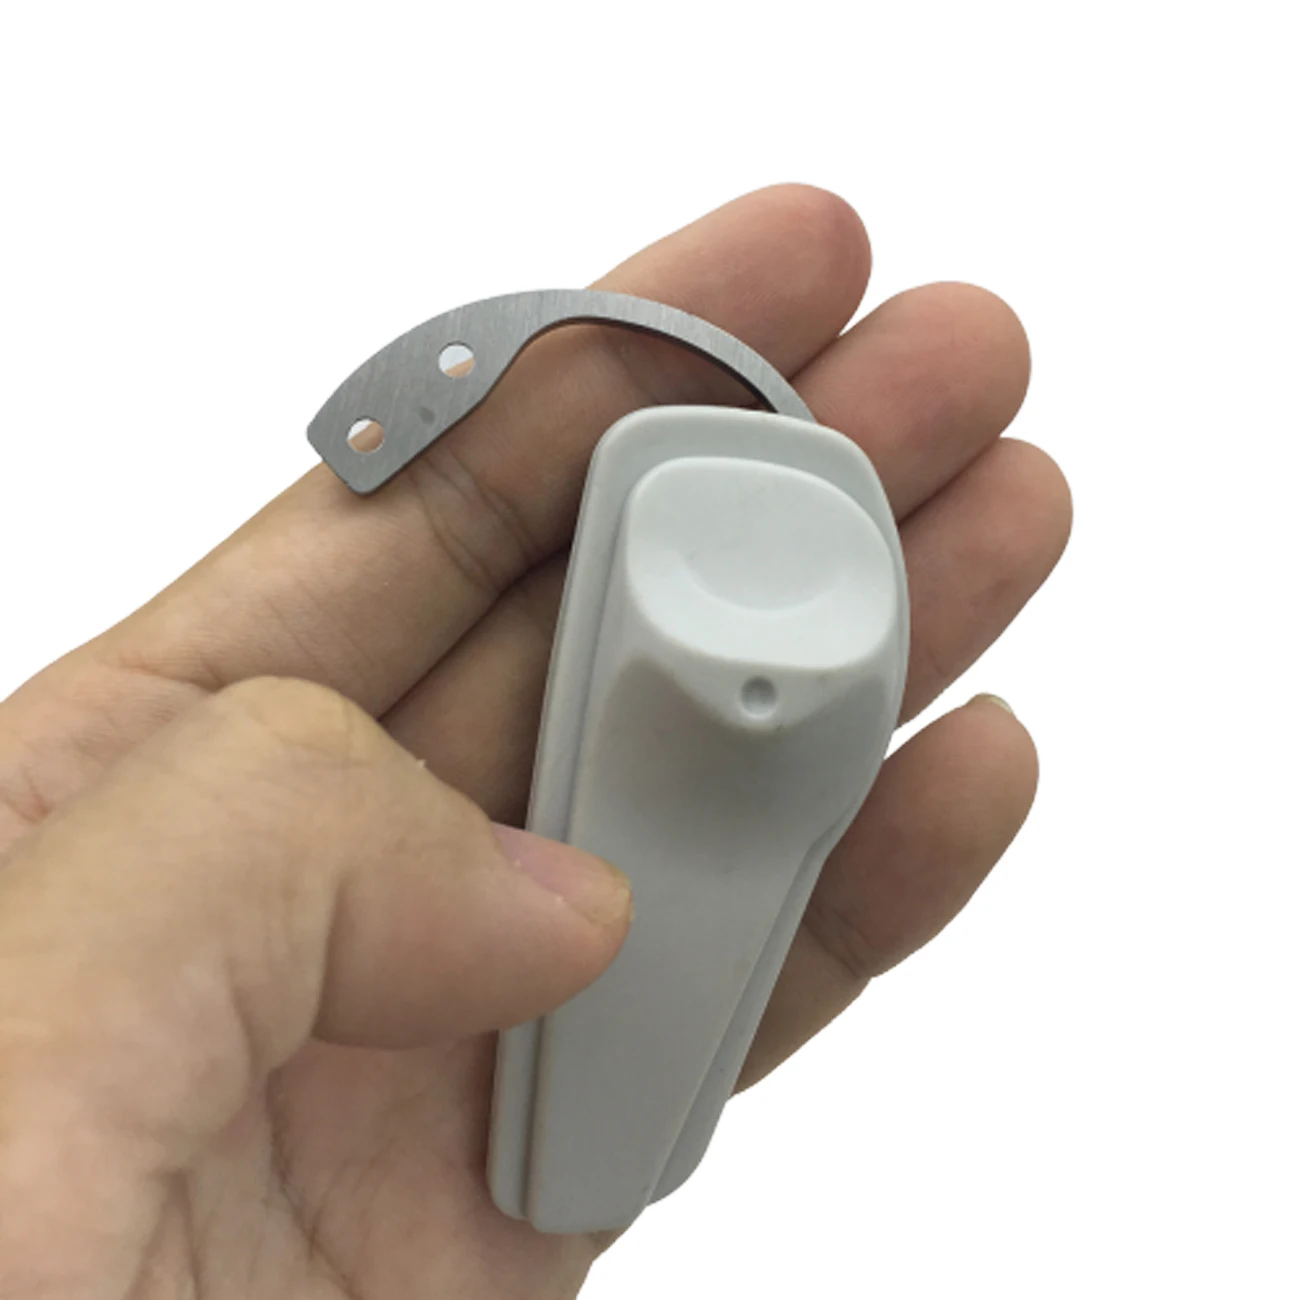 Крючок для снятия защитной бирки EAS Mini Key Detacher, 1 шт., крючок для снятия сигнализации Super, отмычка, Универсальный магнитный замок для S3